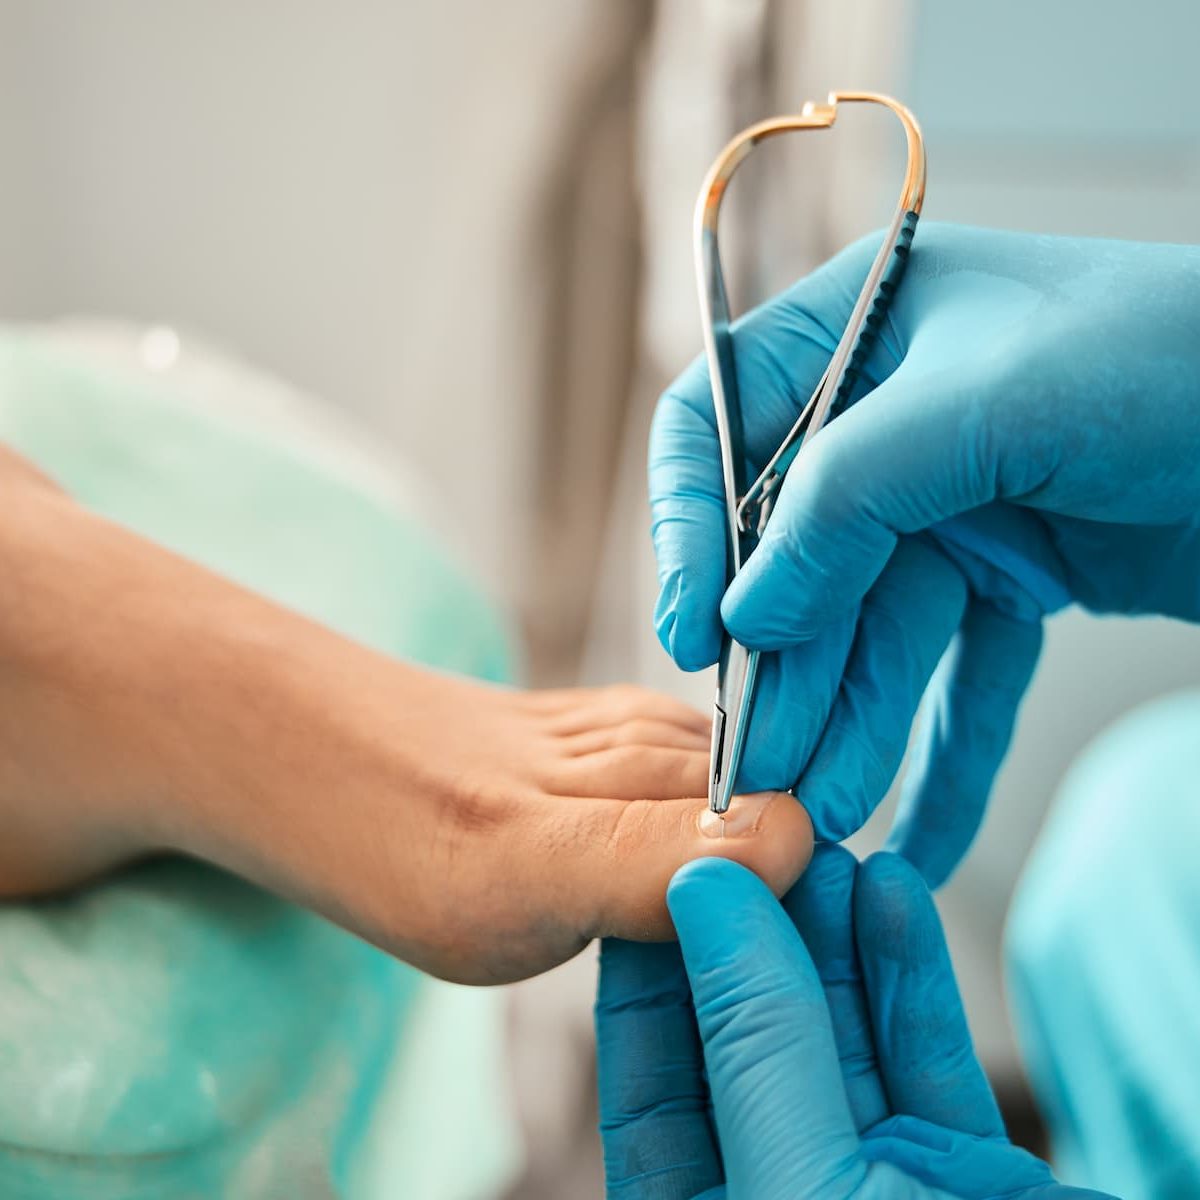 Ingrown toenail prevention